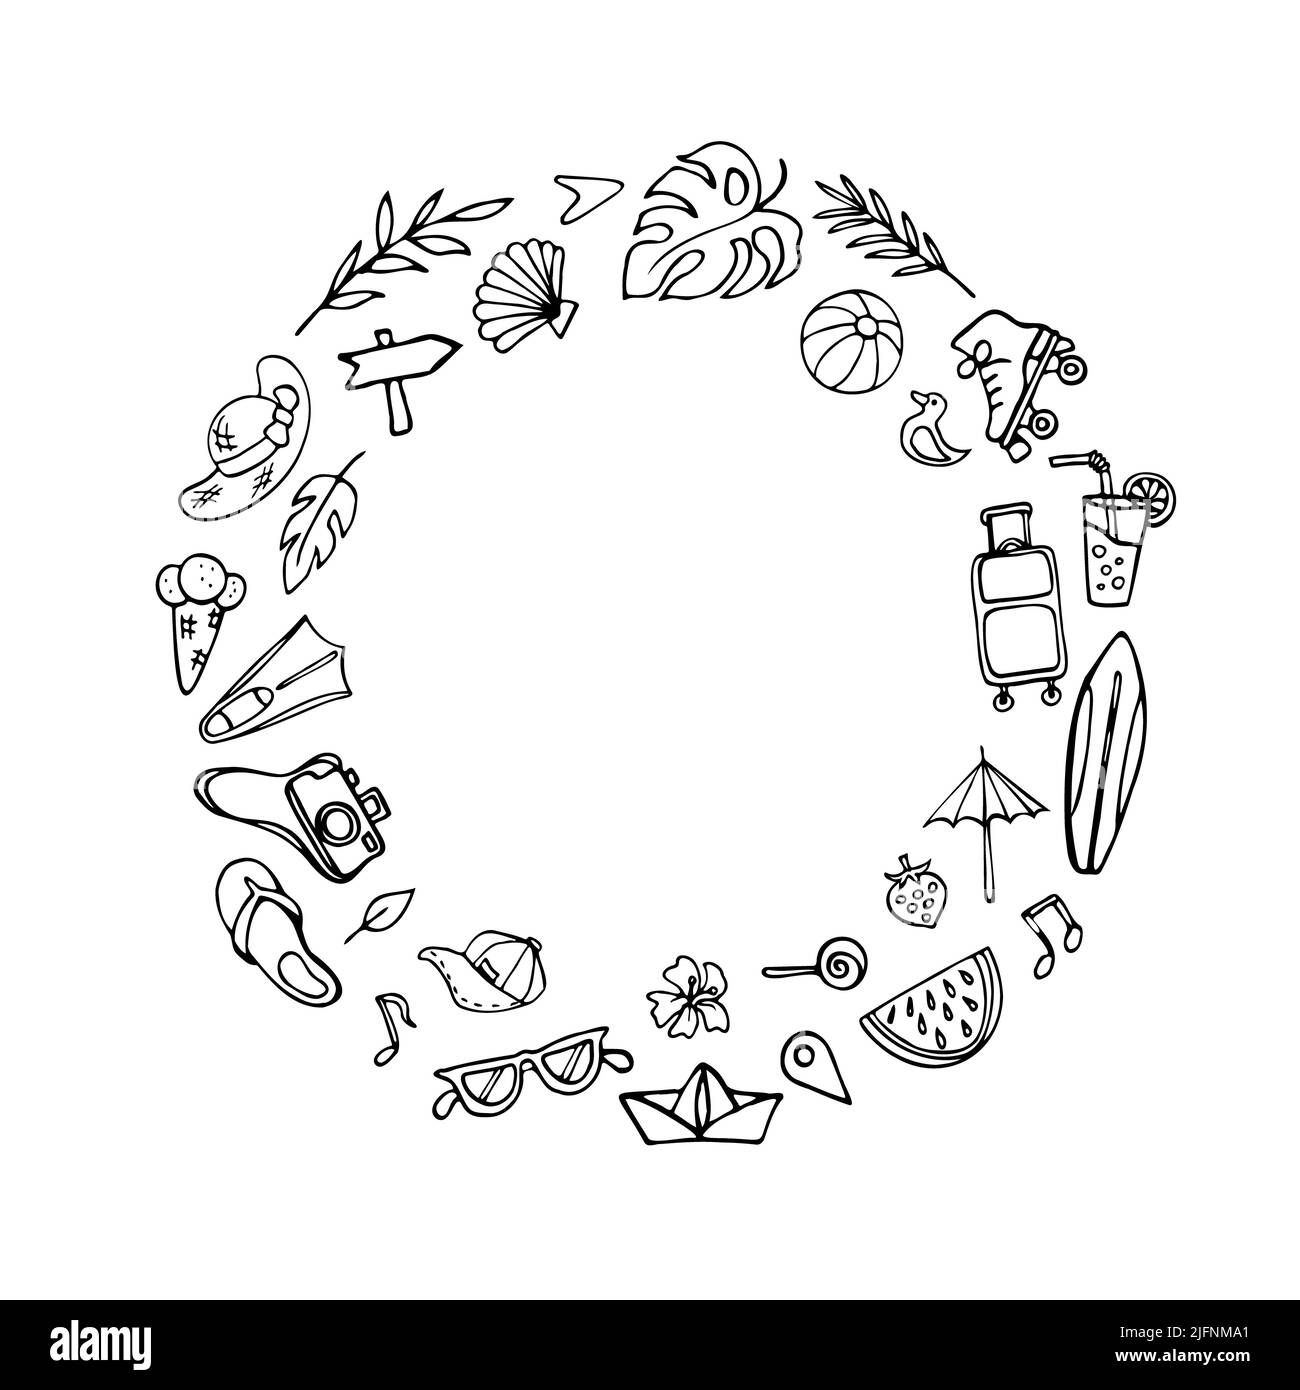 Símbolos de verano: Composición circular con espacio para texto o imagen. Varios objetos de vacaciones, dibujos animados, tema de resort de verano. Dibujado a mano Foto de stock